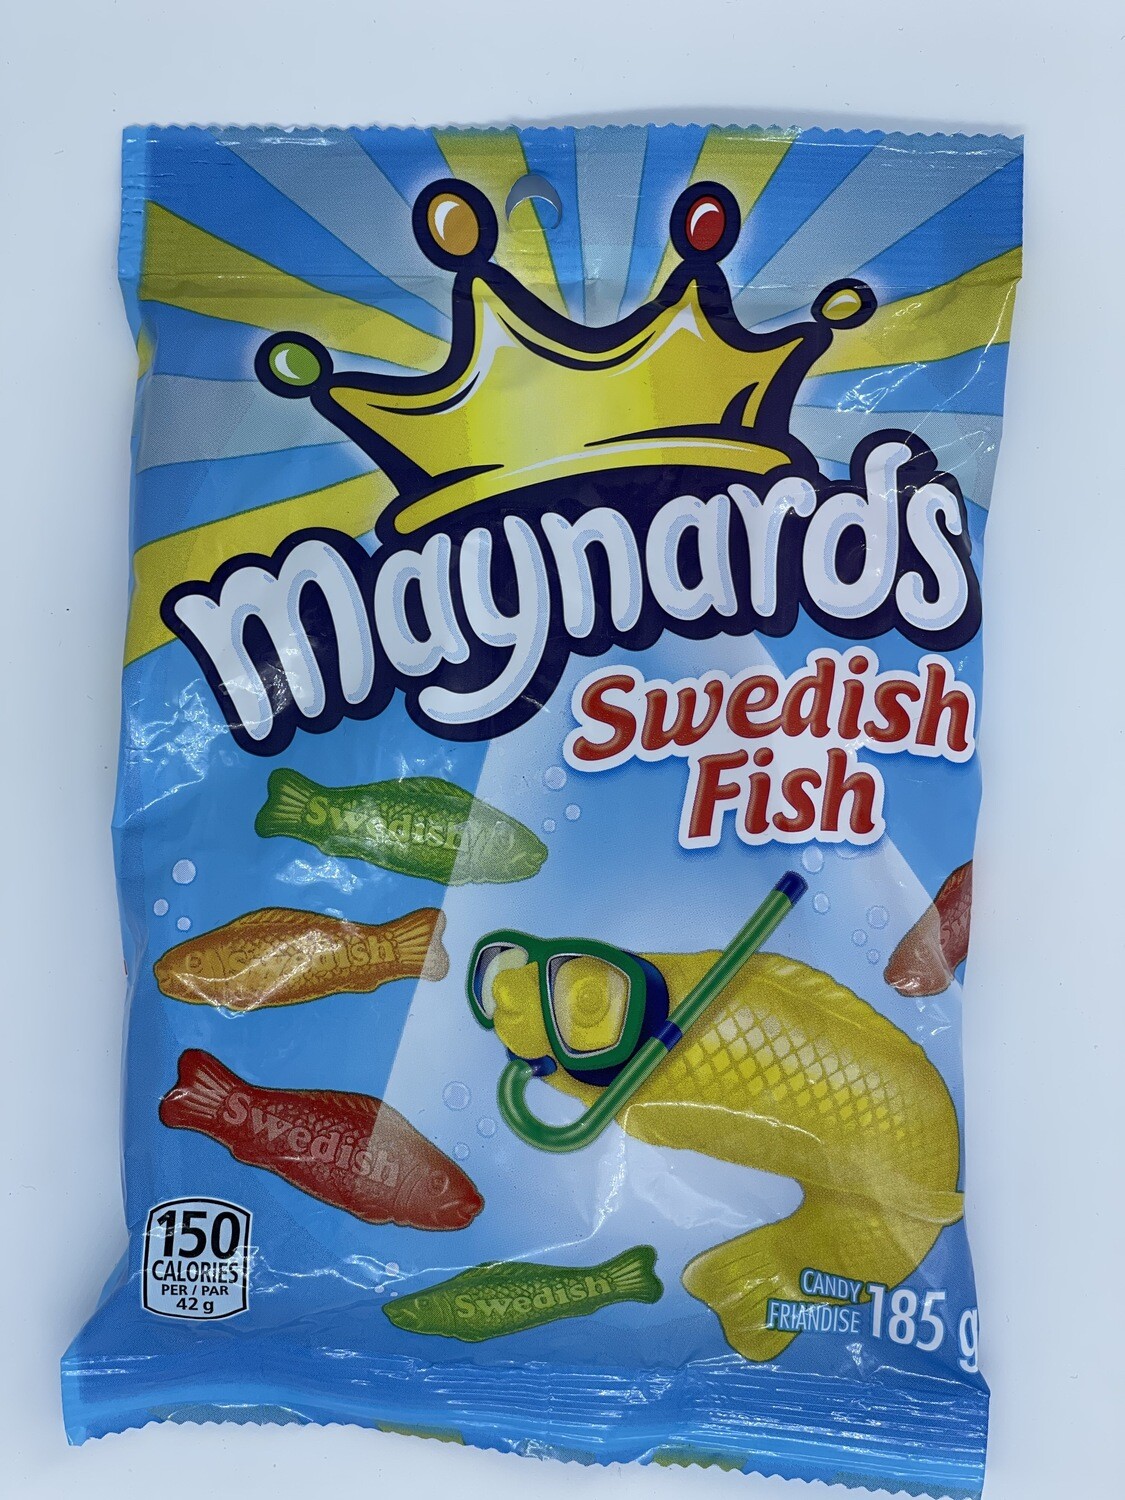 Maynards Swedish Fish